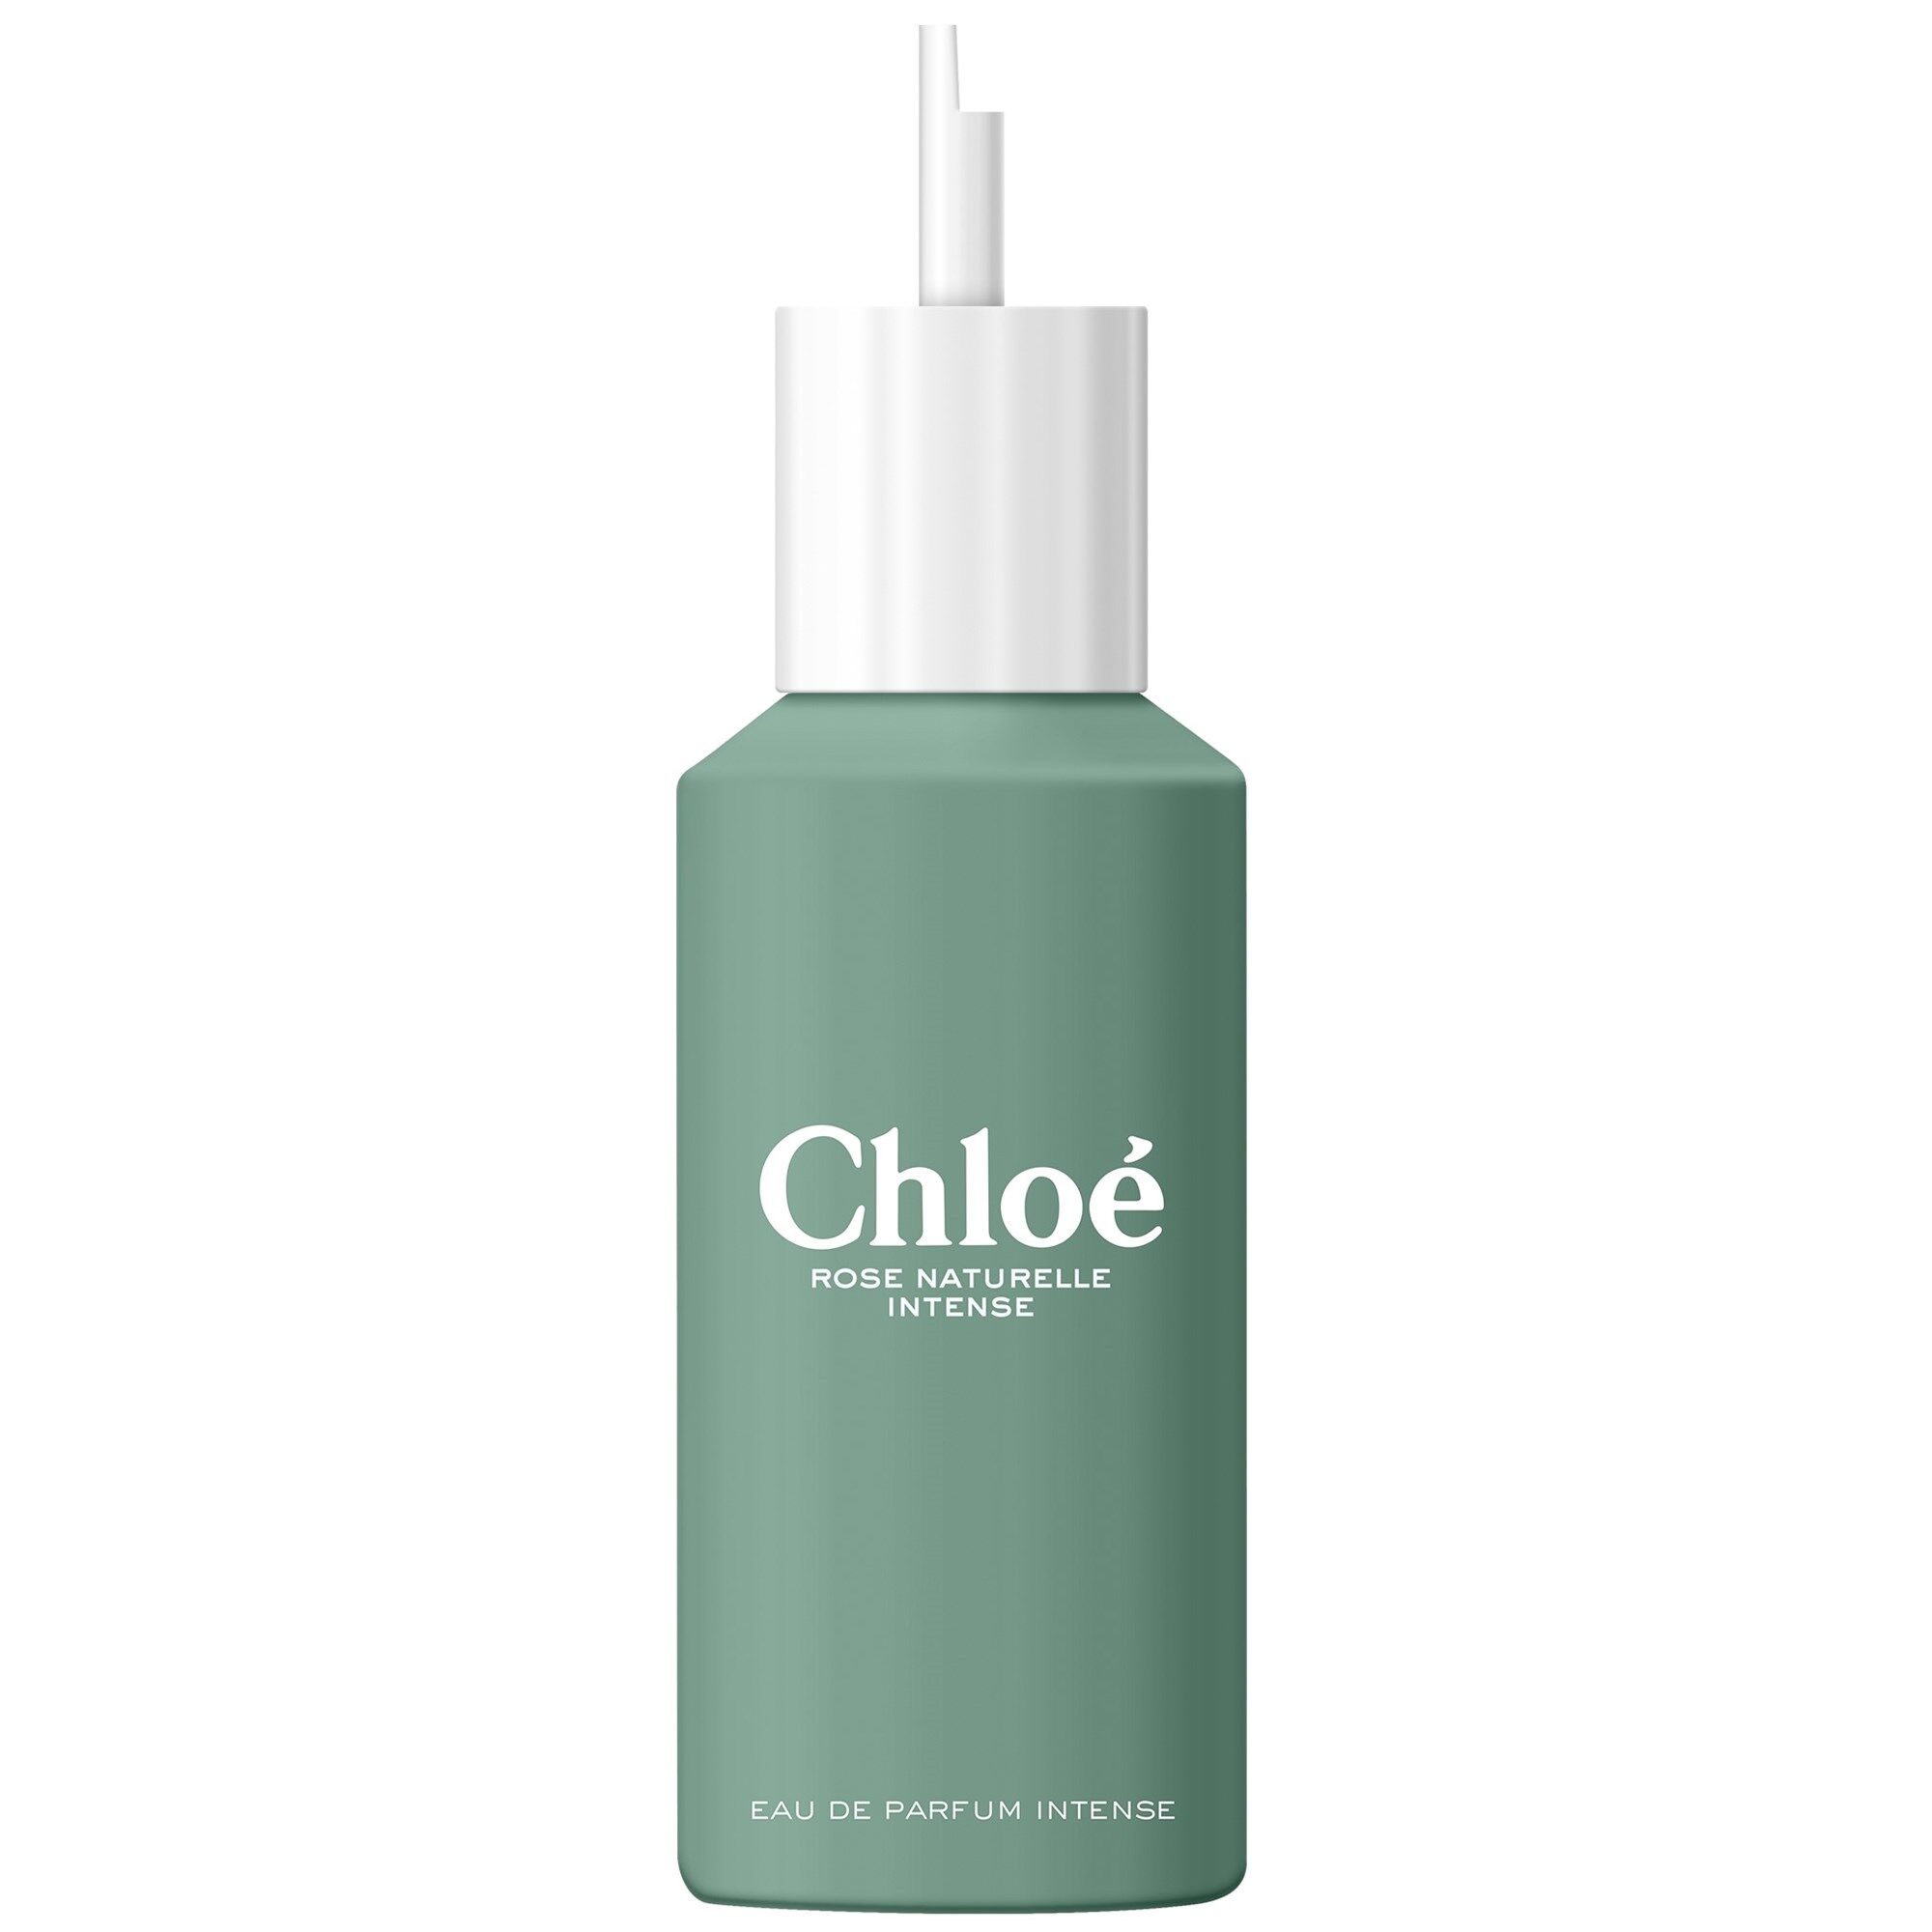 Chloé Rose Naturelle Intense Eau de Parfum Intense para mujer 150mL refill